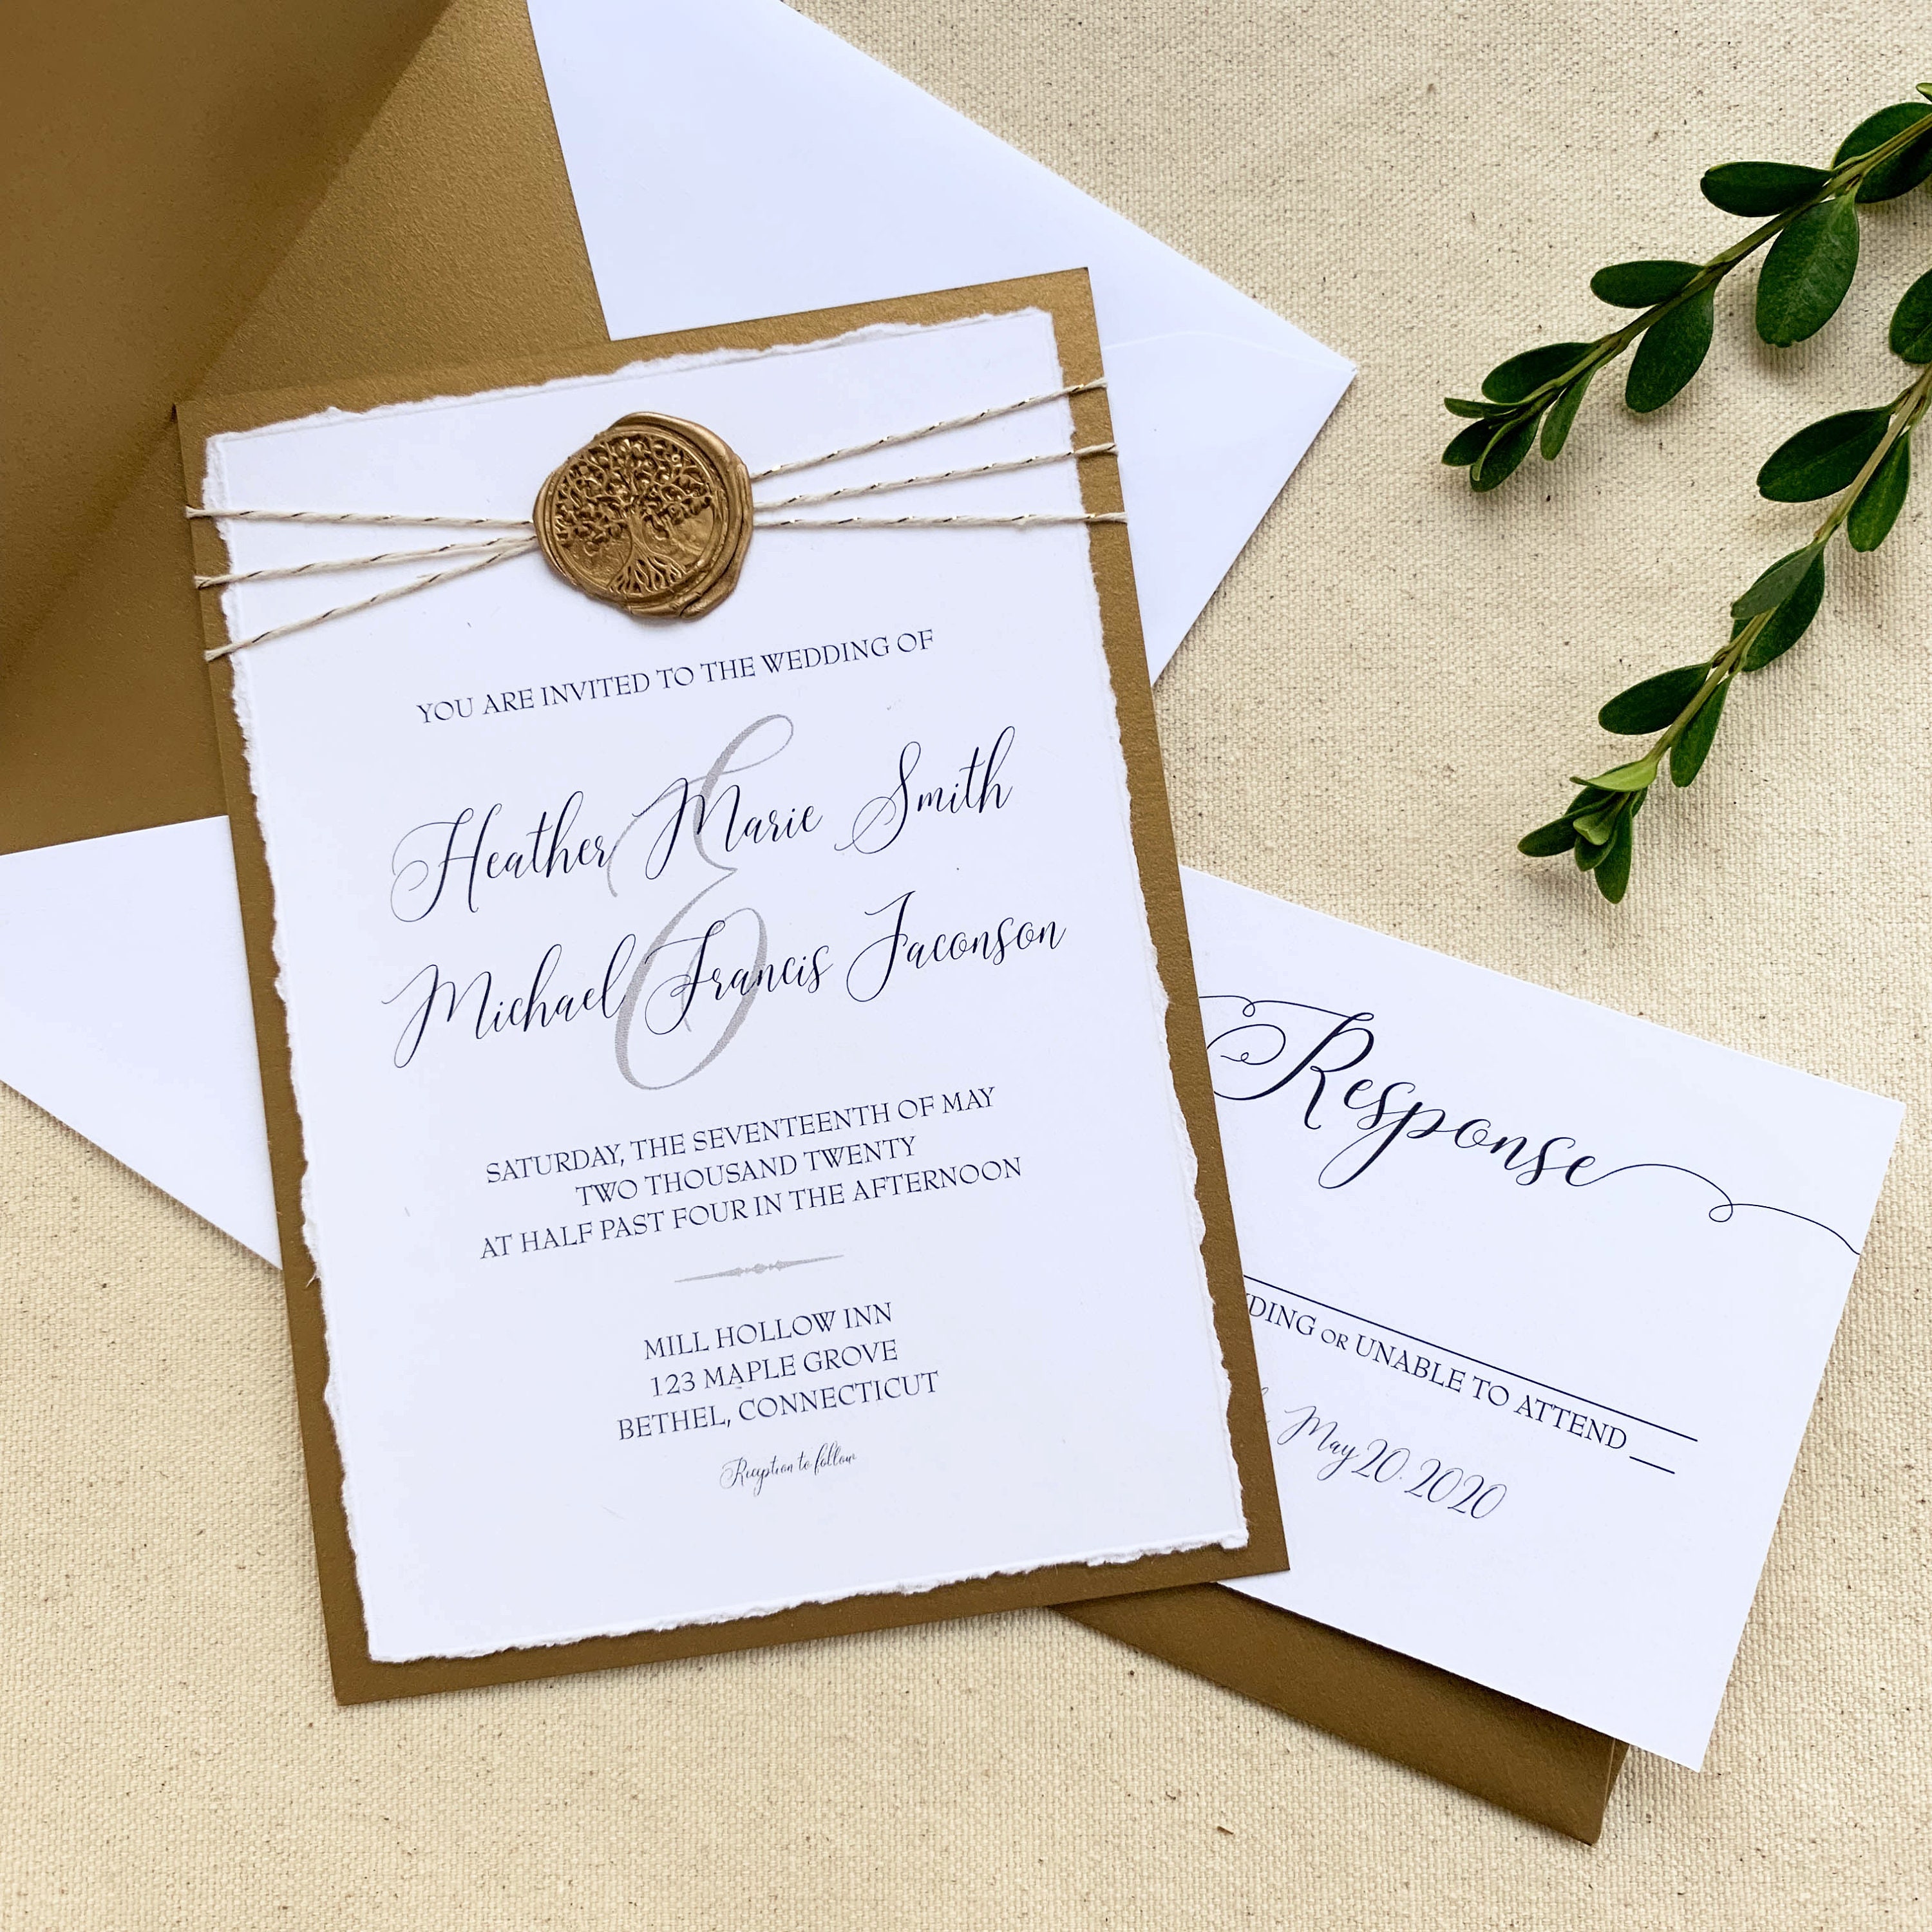 Vintage Flor de lis sello de cera sello de sellado adorno tarjeta de  invitación de boda Caracol correo regalo paquete vino gran idea de regalo  de